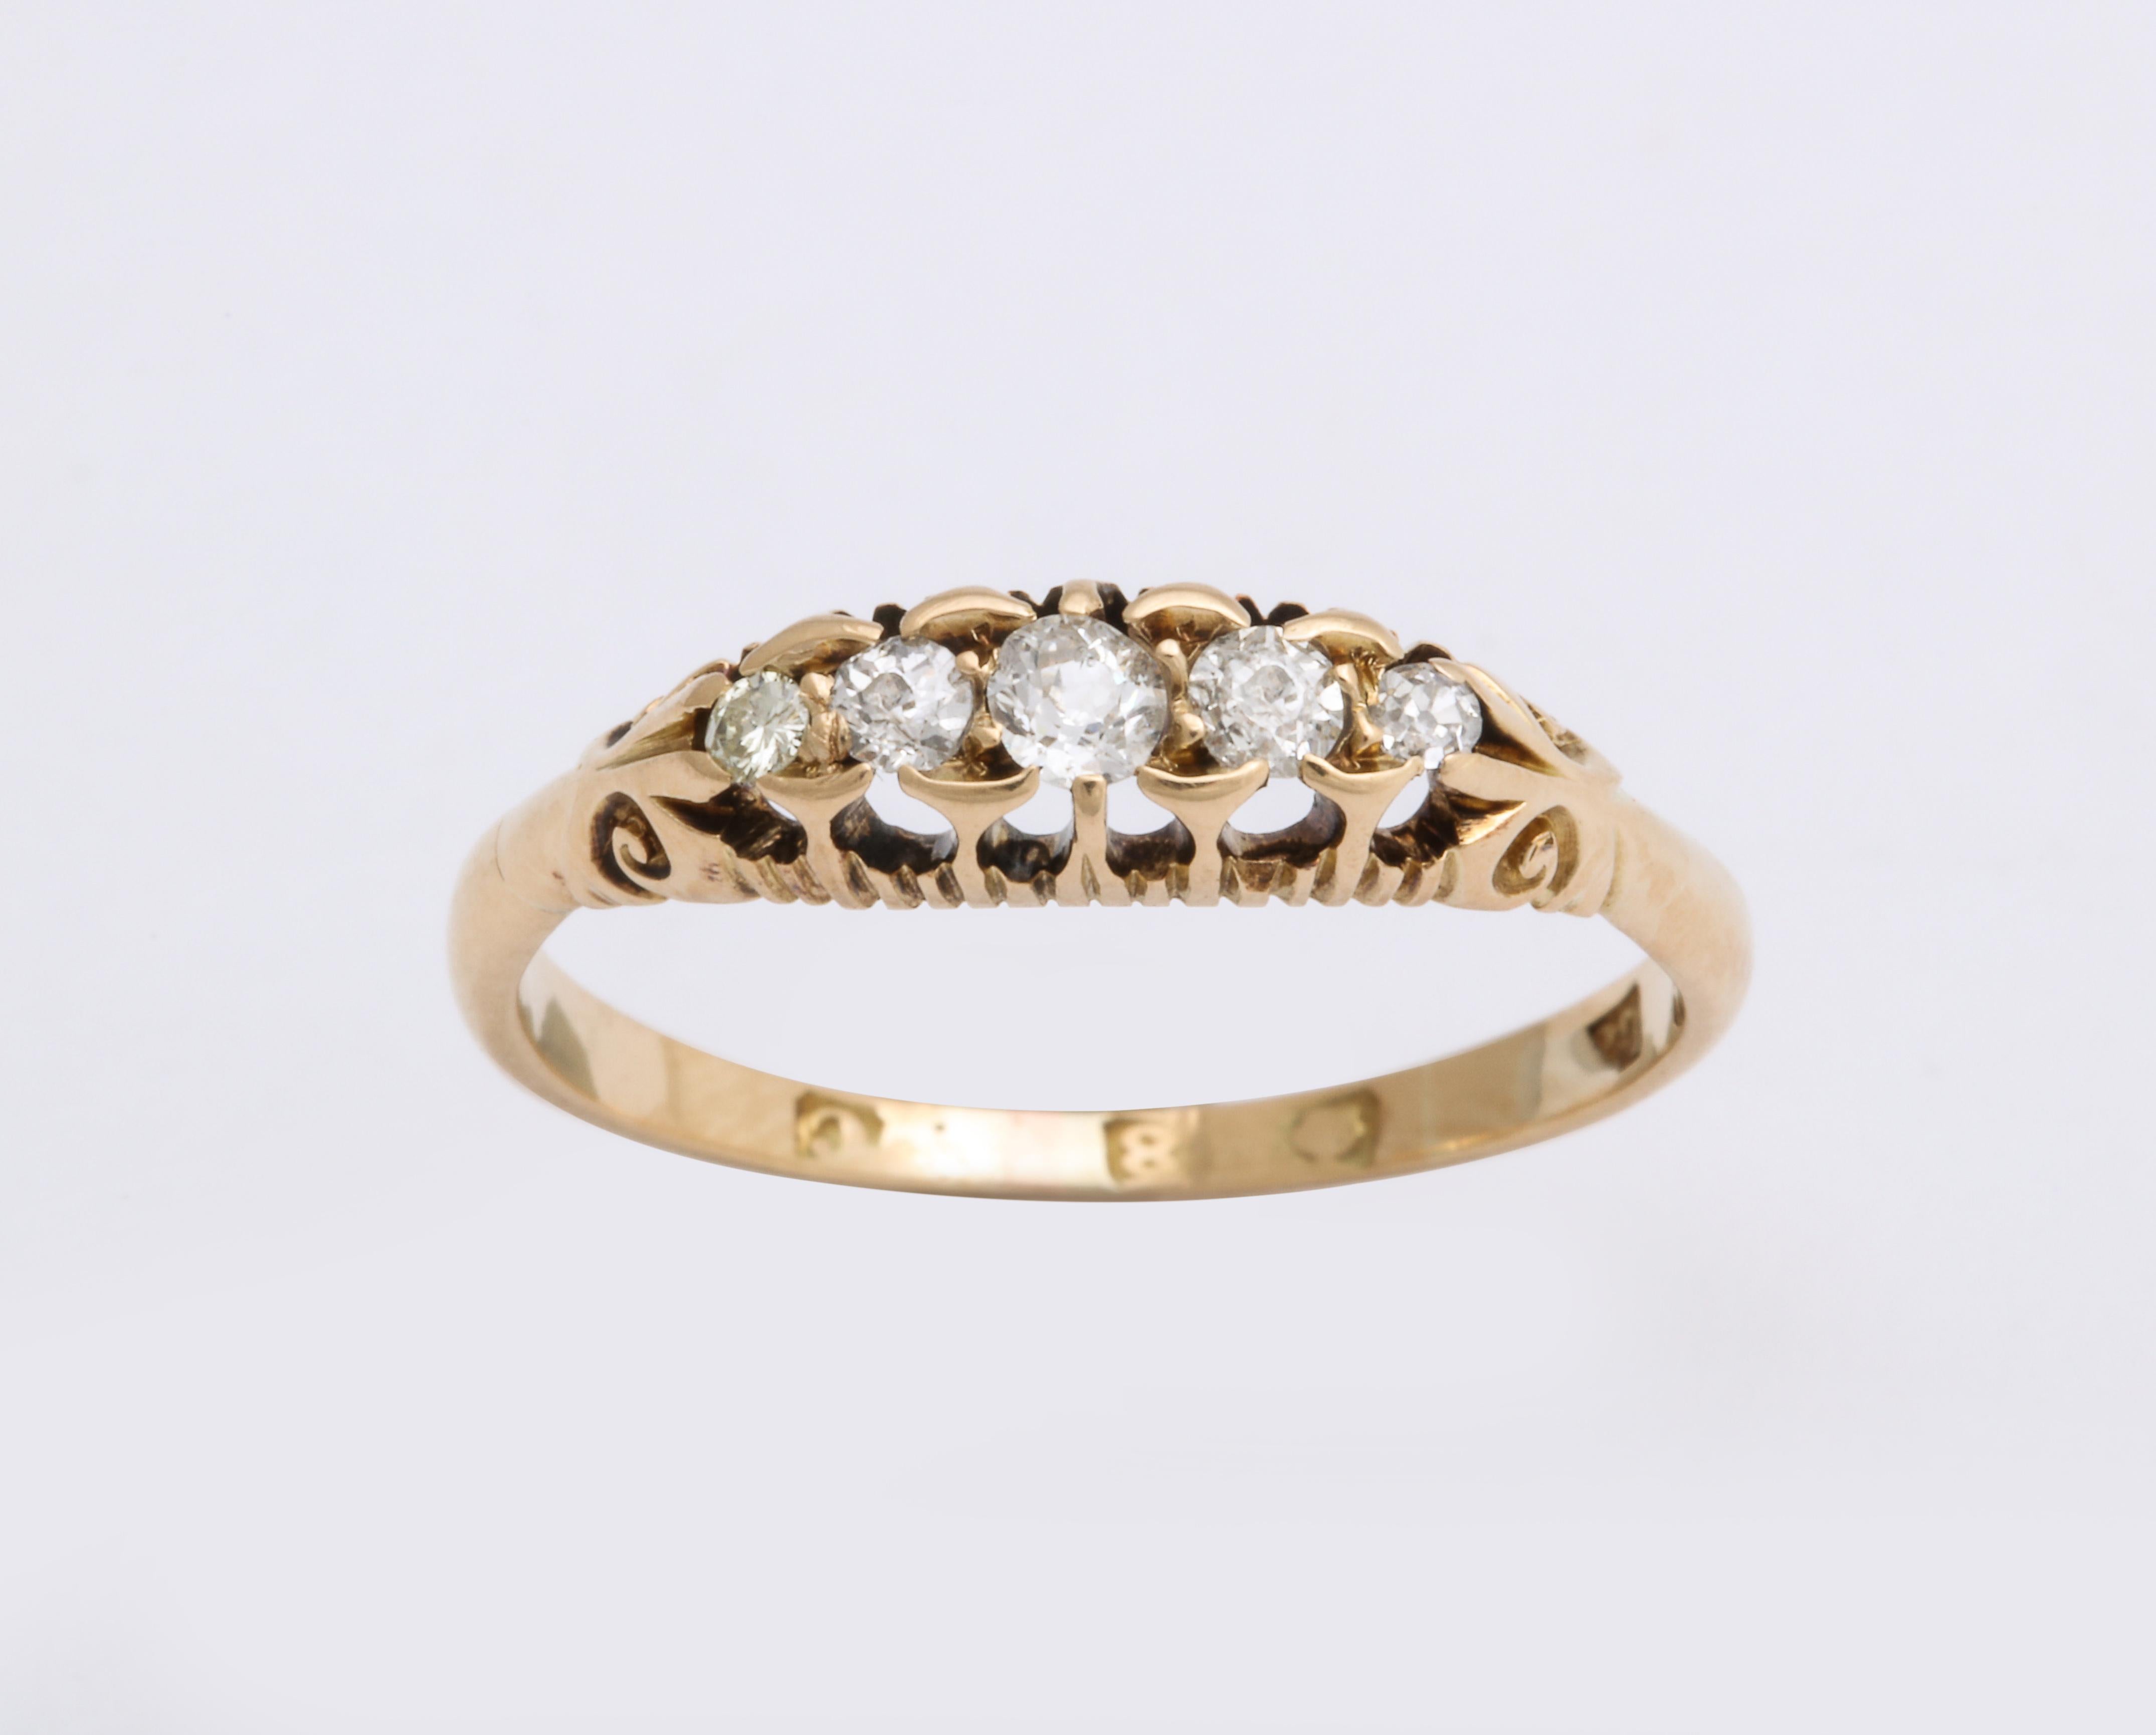 Schöner englischer Ring aus 18-karätigem Gold. Der halbe Reif ist mit fünf abgestuften Diamanten im Antikschliff besetzt, in einer Fassung aus 18-karätigem Gold. 

Englisch, gepunzt (berieben), gestempelt 18 mit Datumsangabe für London 1958. 